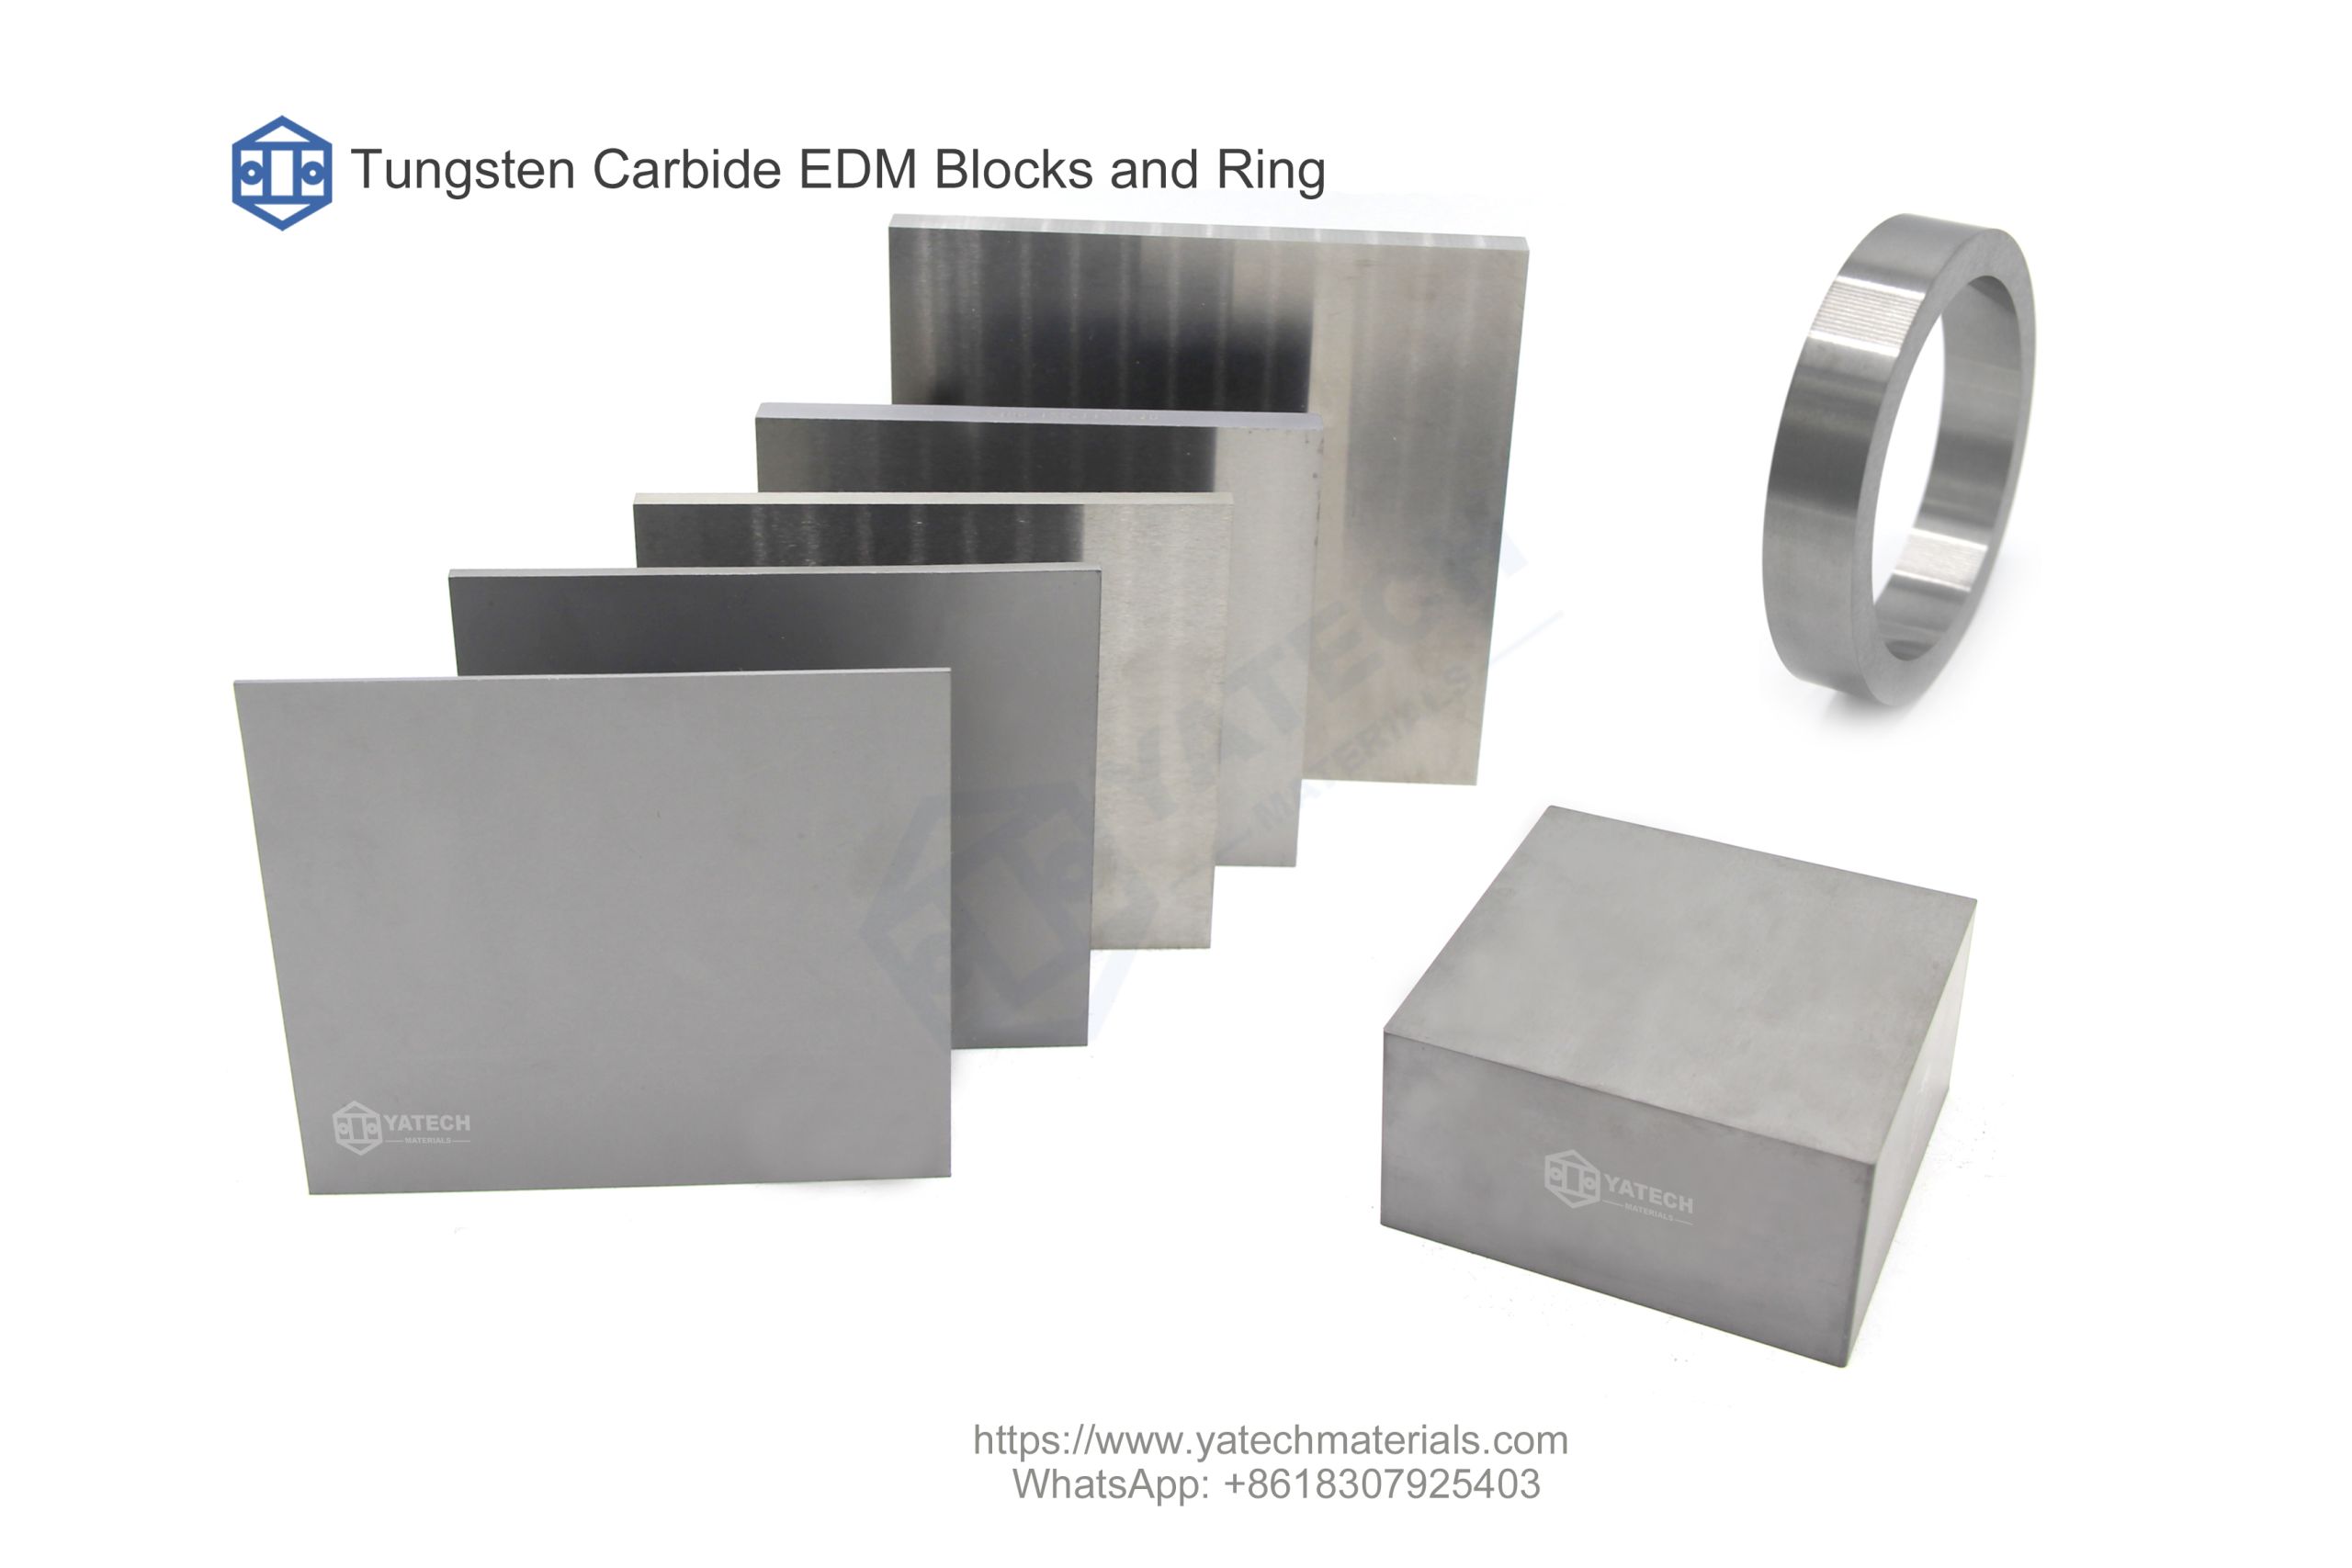 Blocs EDM en carbure de tungstène et anneau